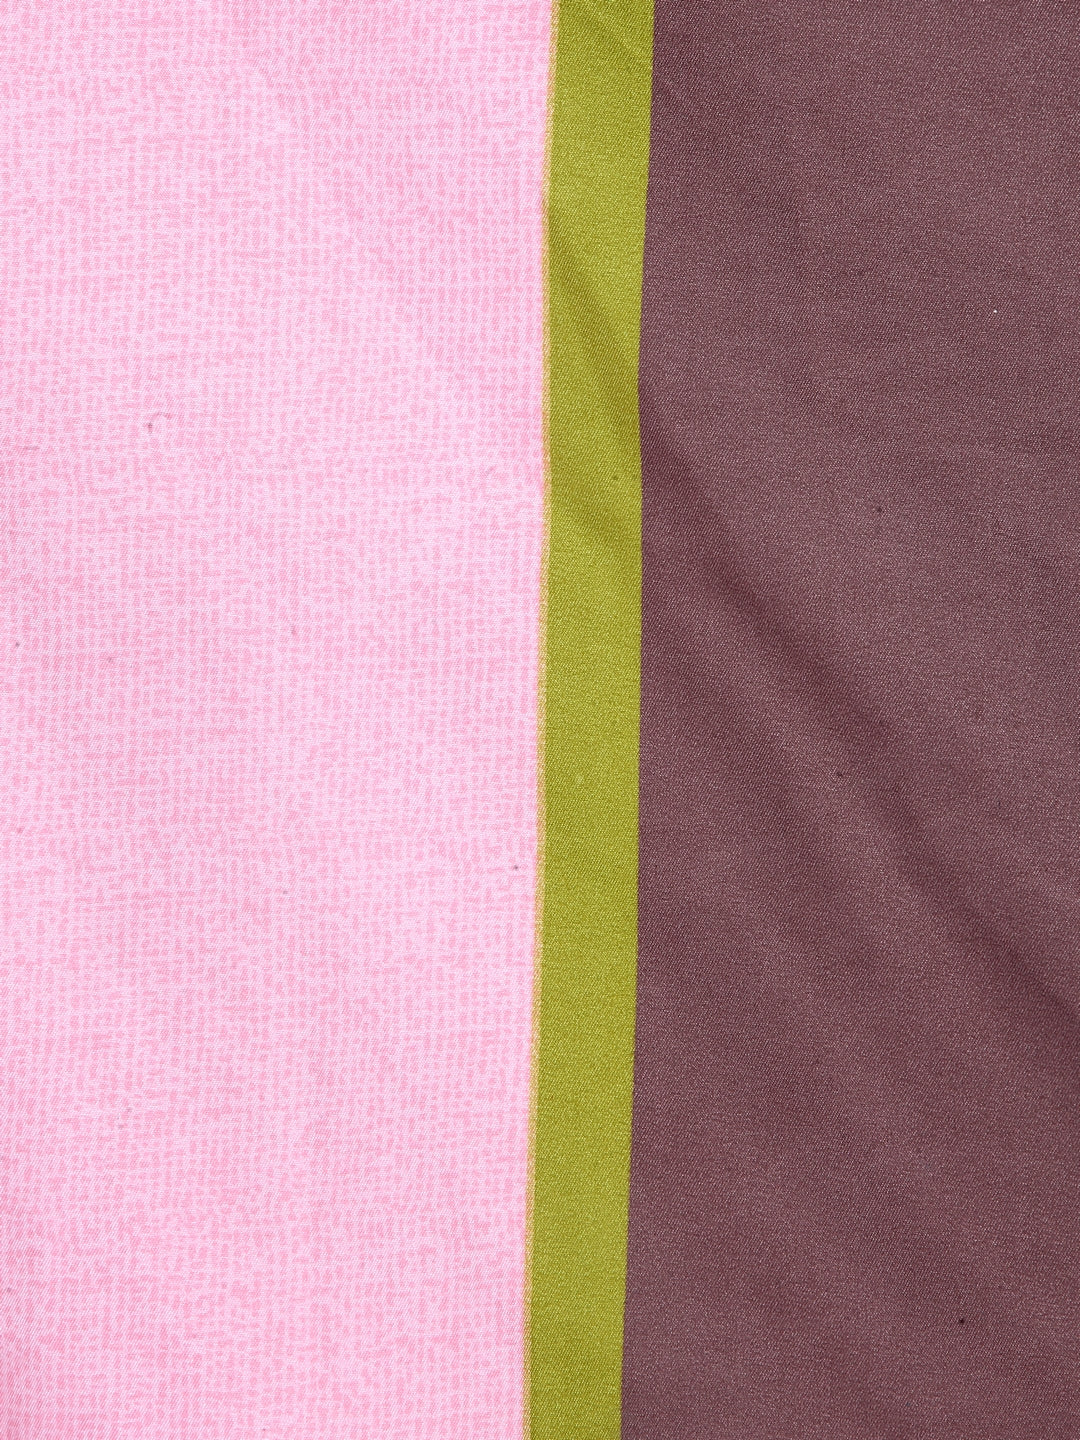 Arrabi Multi Stripes TC Cotton Blend Single Size Bedsheet with 1 Pillow Cover (220 X 150 cm)